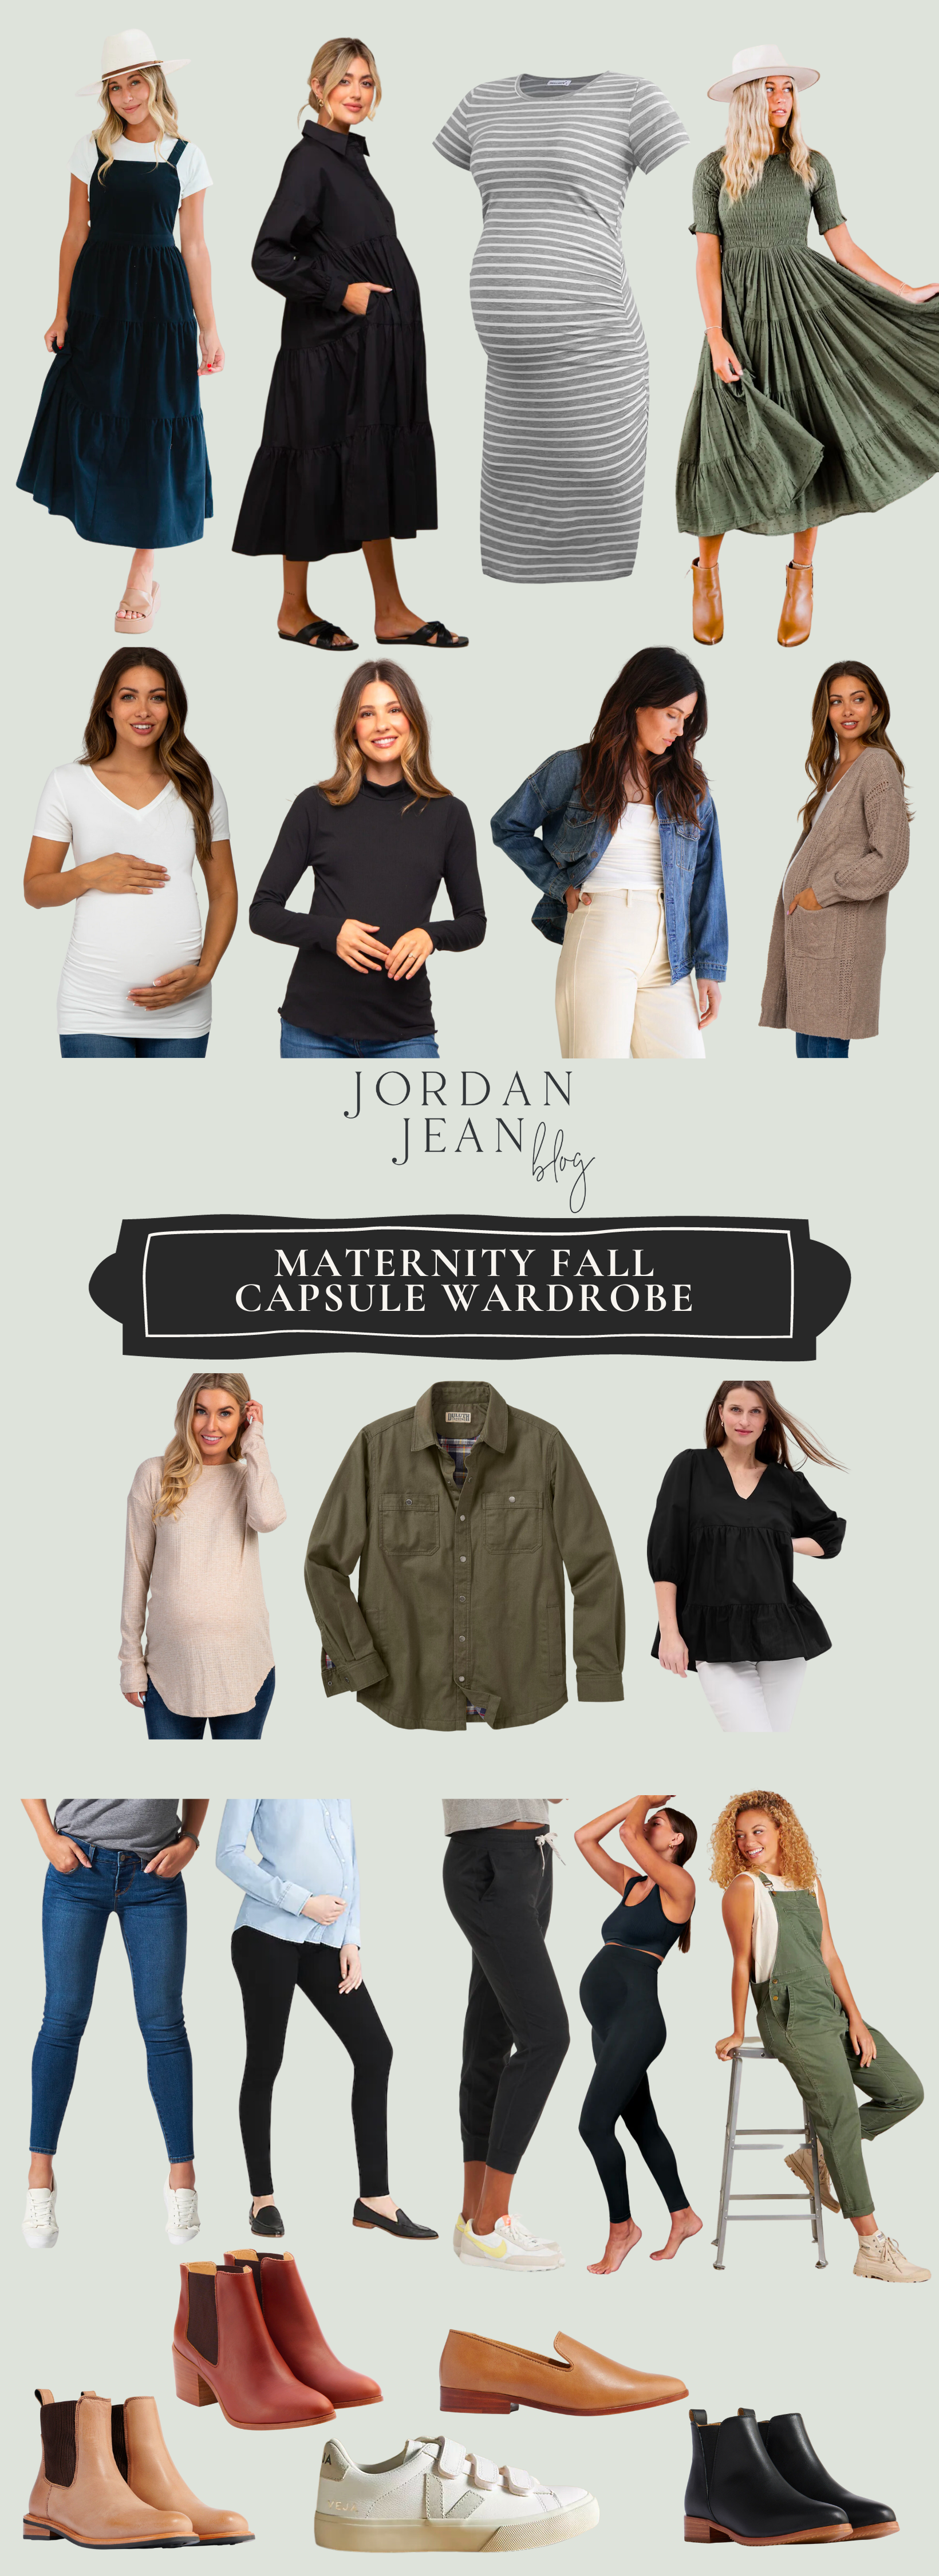 Maternity Clothing Staples + Fall Maternity Capsule Wardrobe - Jordan Jean